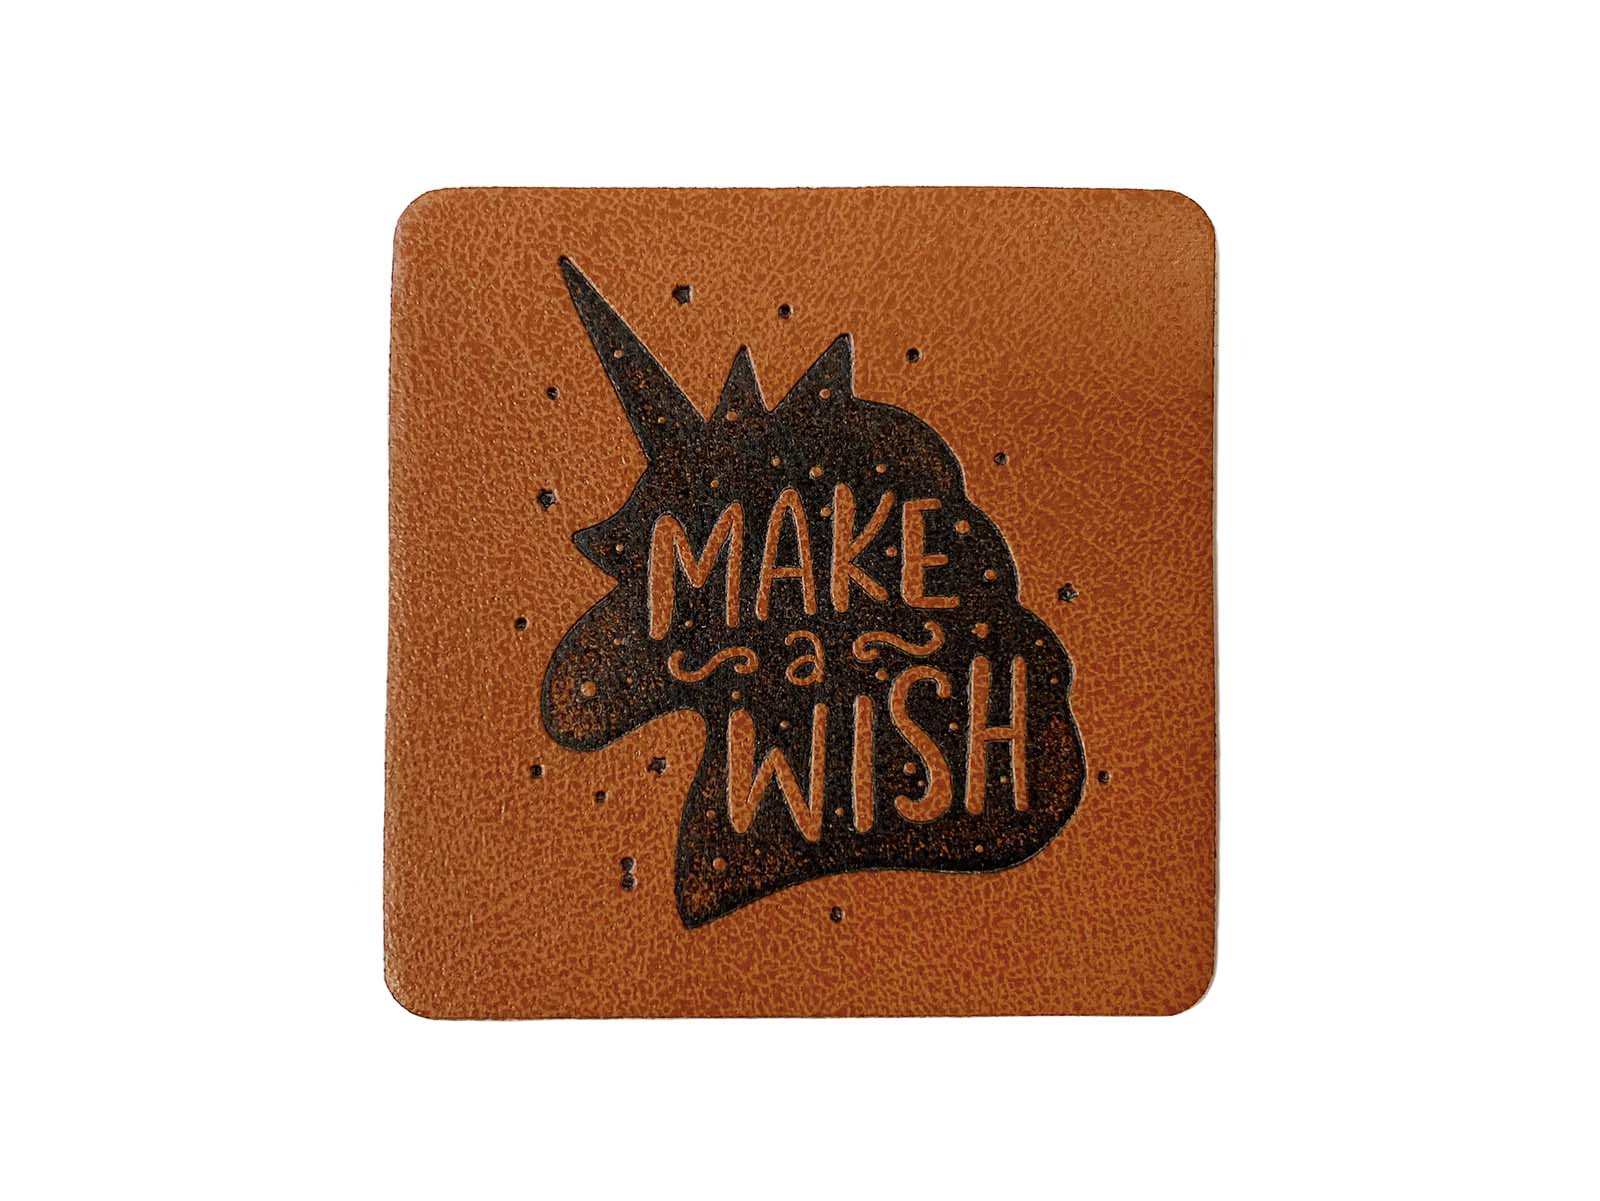 Label aus Kunstleder - "Make a wish" Einhorn in braun